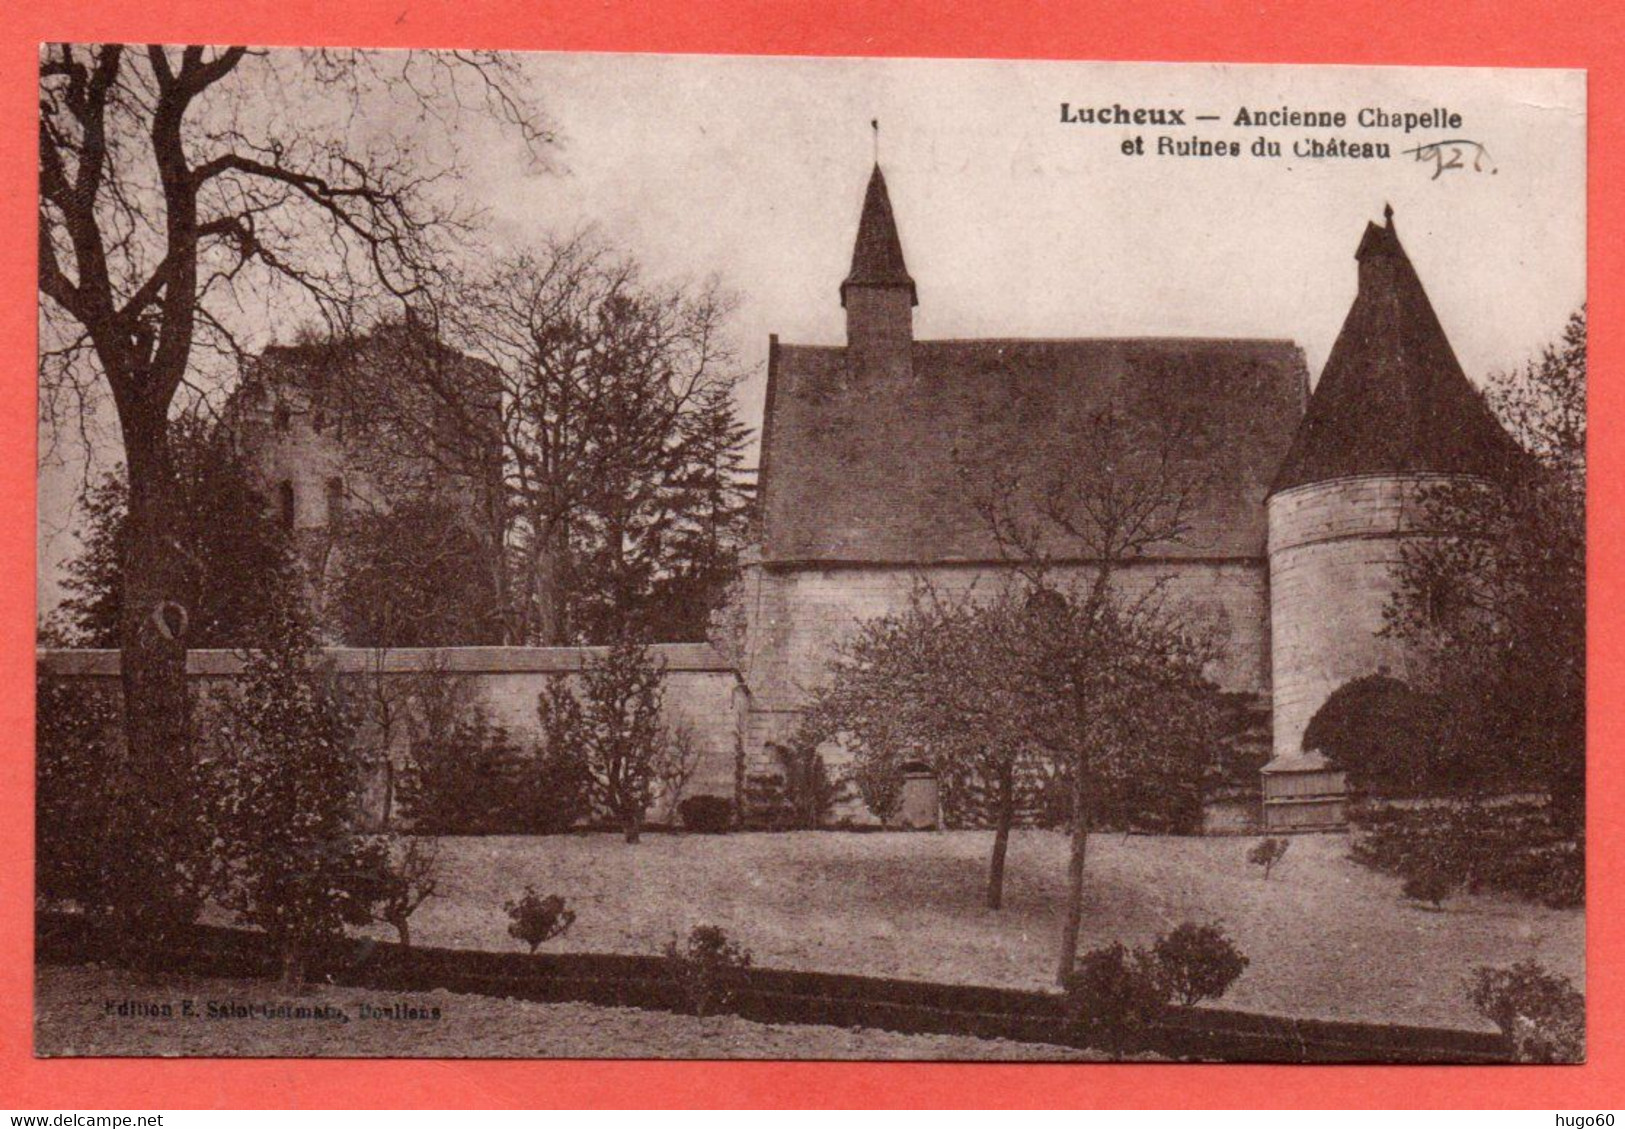 80 - LUCHEUX - Ancienne Chapelle Et Ruines Du Château - Acheux En Amienois